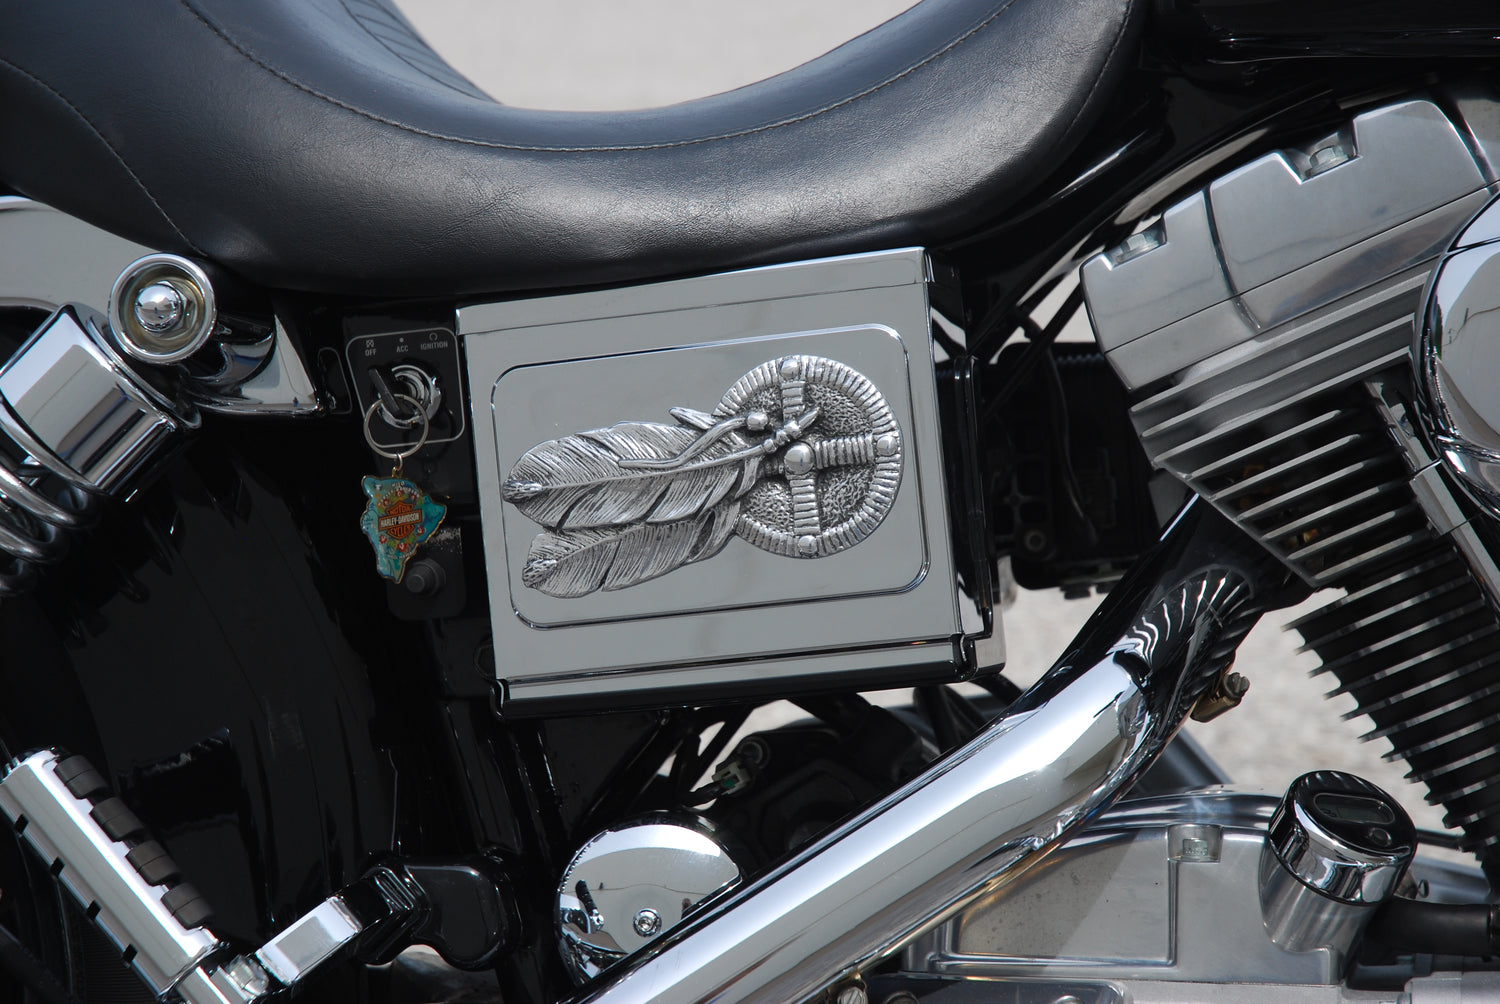 Harley/Indian Stick On Emblems